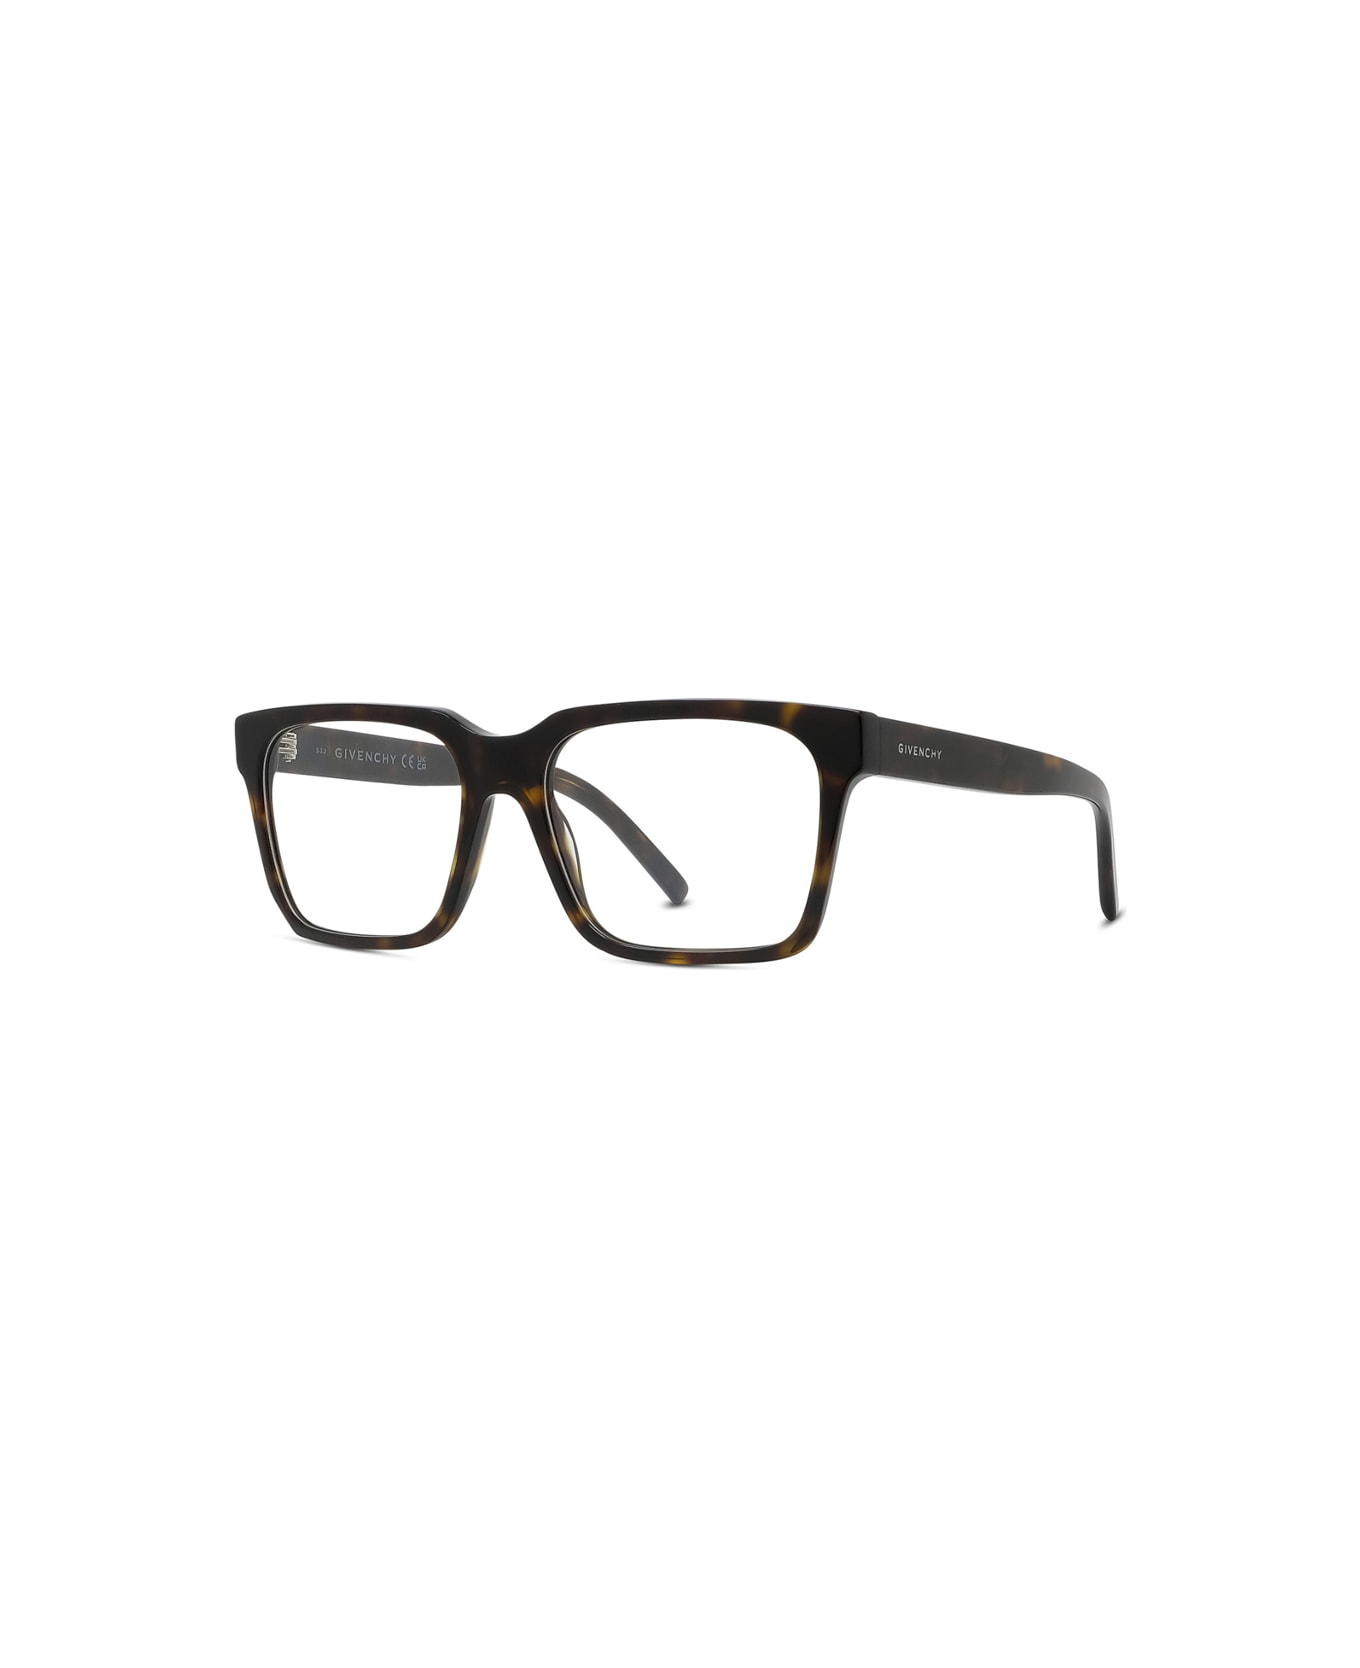 Givenchy Eyewear Gv50043i 052 Glasses